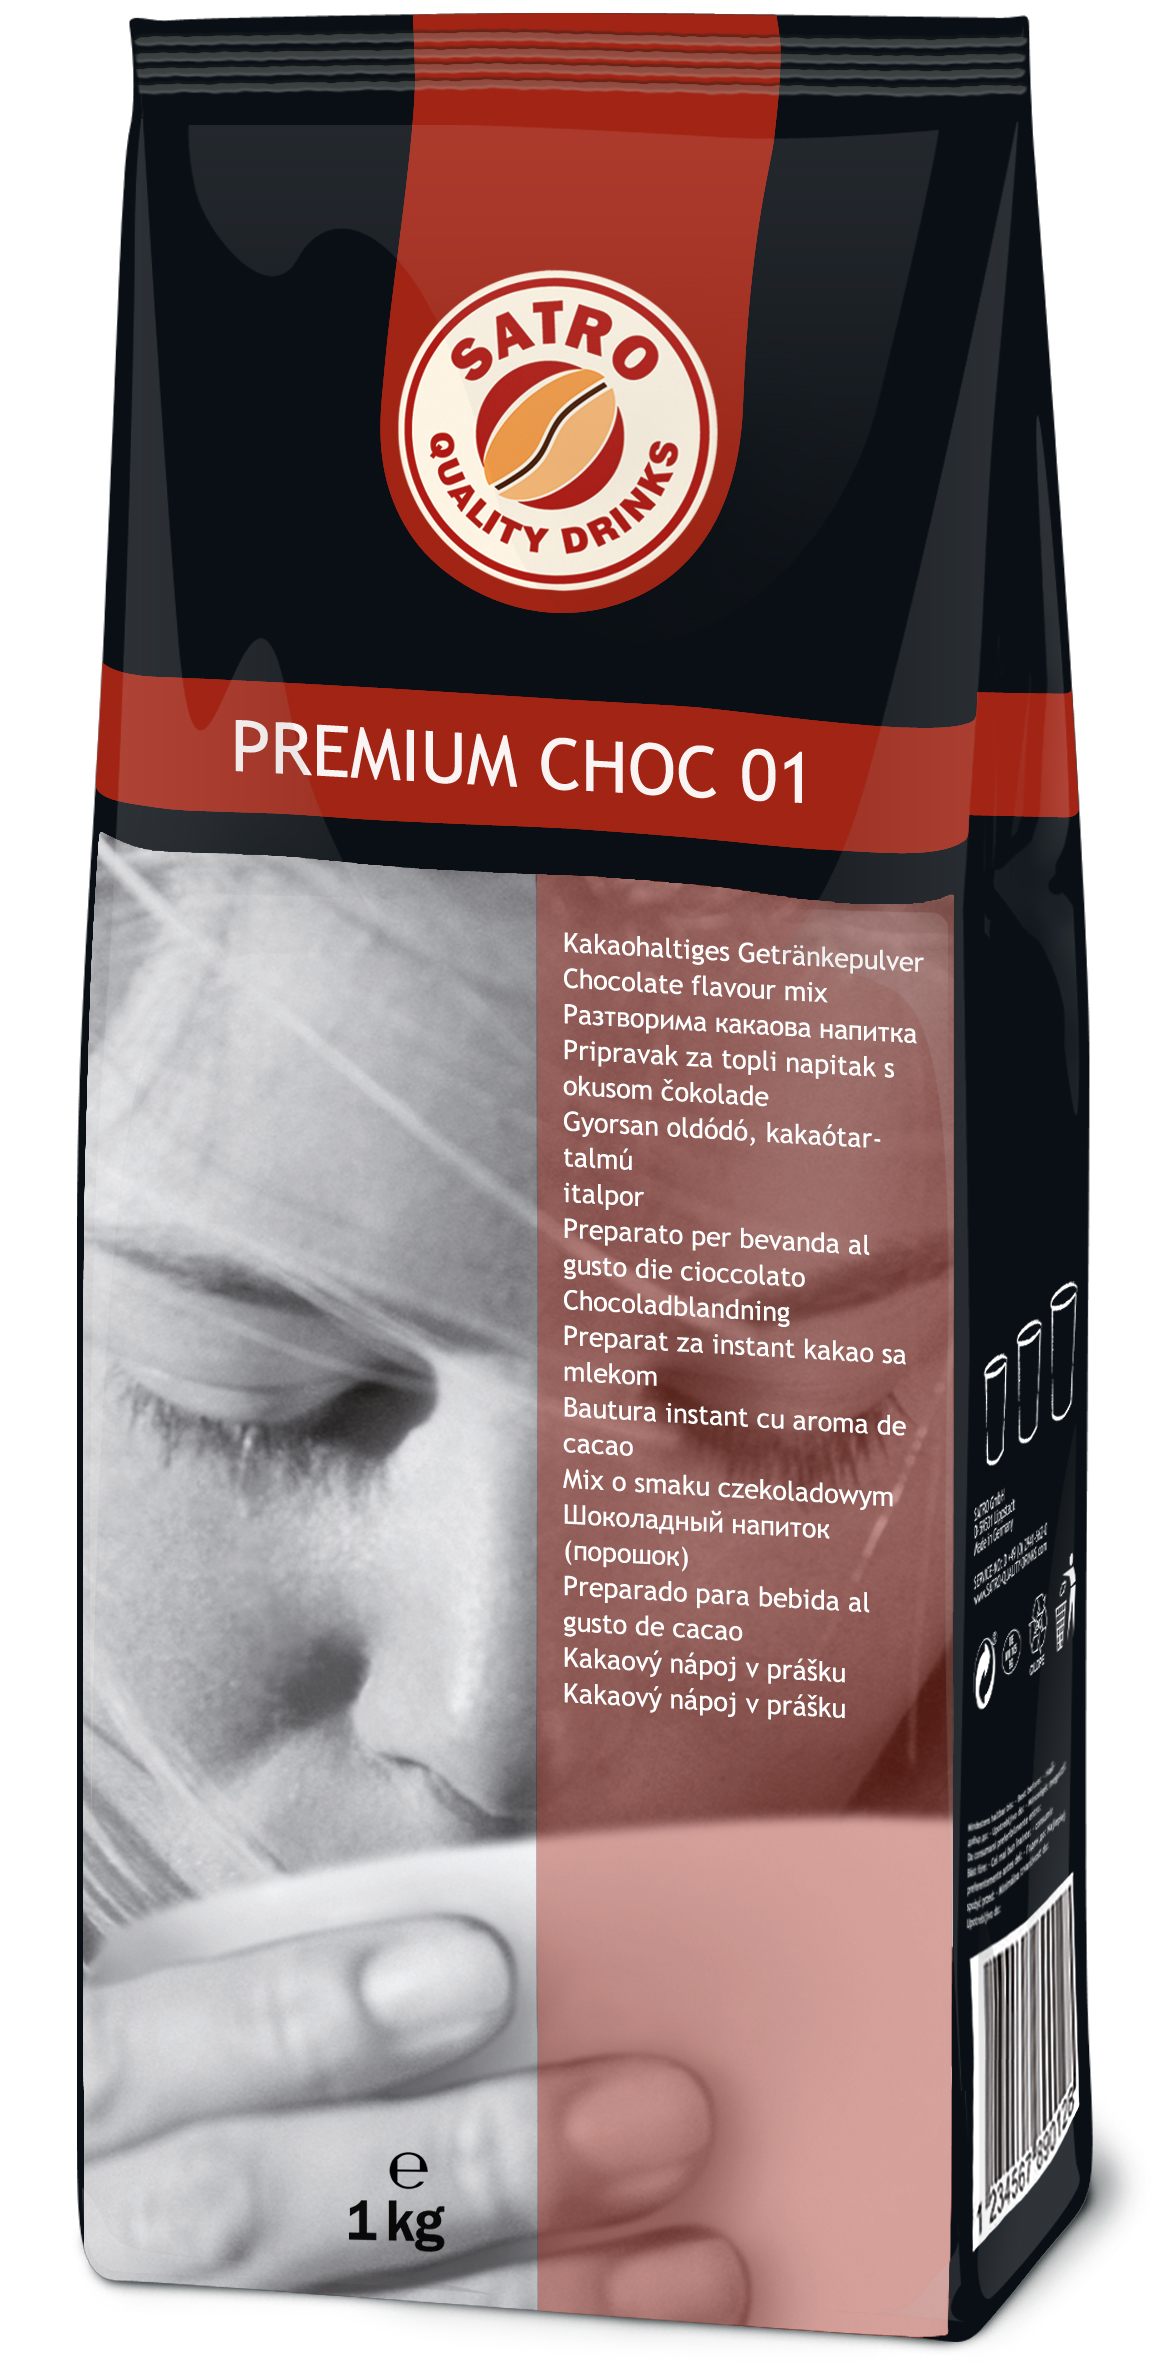 Satro Premium Choc 01